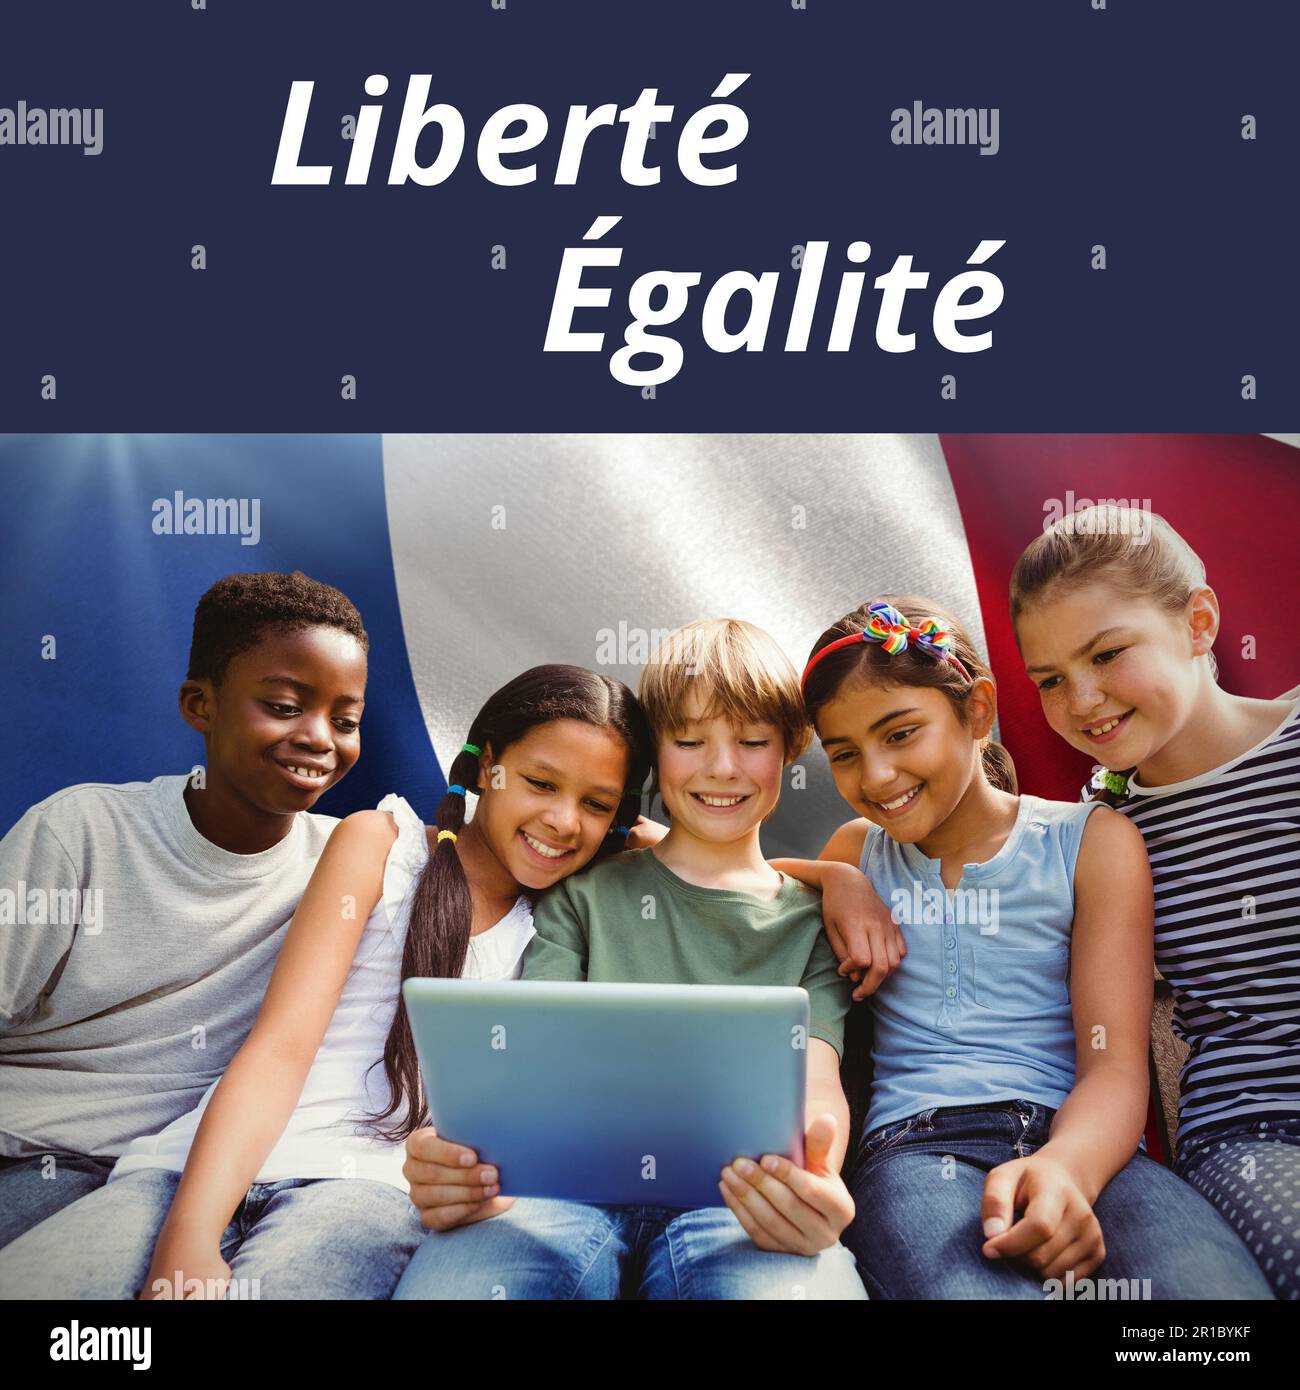 Zusammensetzung des Textes zum bastille-Tag über verschiedene Kinder mit Laptop und französischer Flagge Stockfoto